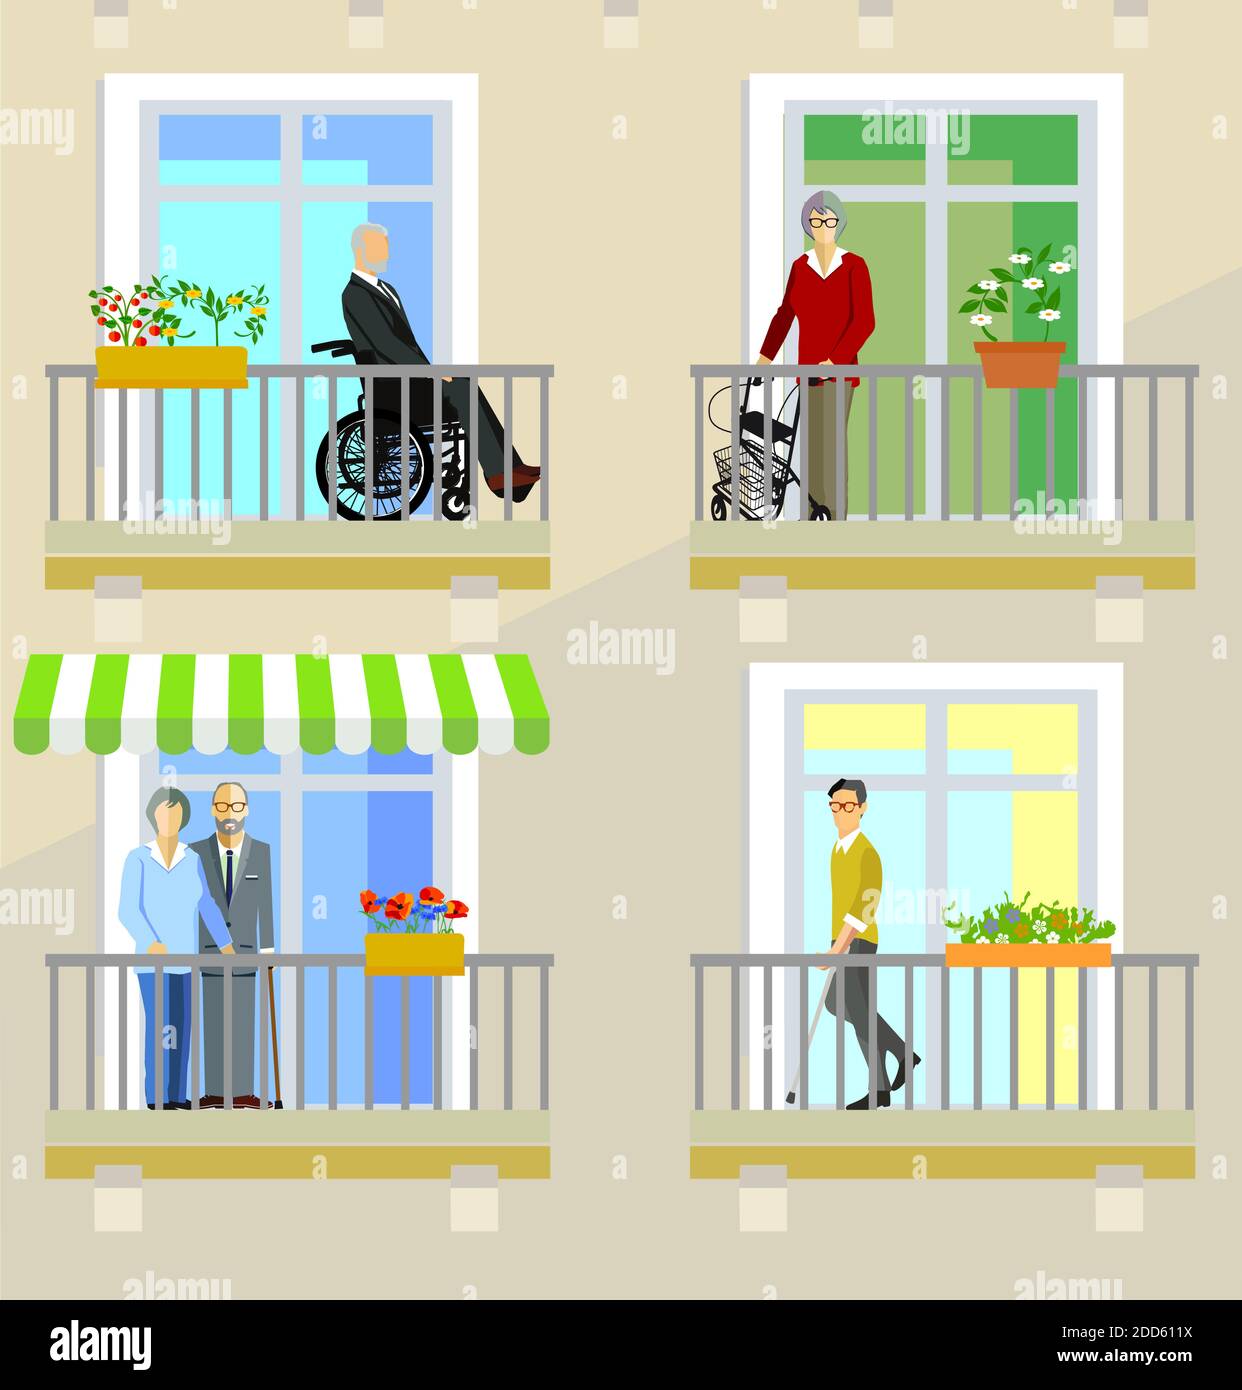 Les aînés et les personnes handicapées dans les maisons de soins infirmiers Illustration de Vecteur